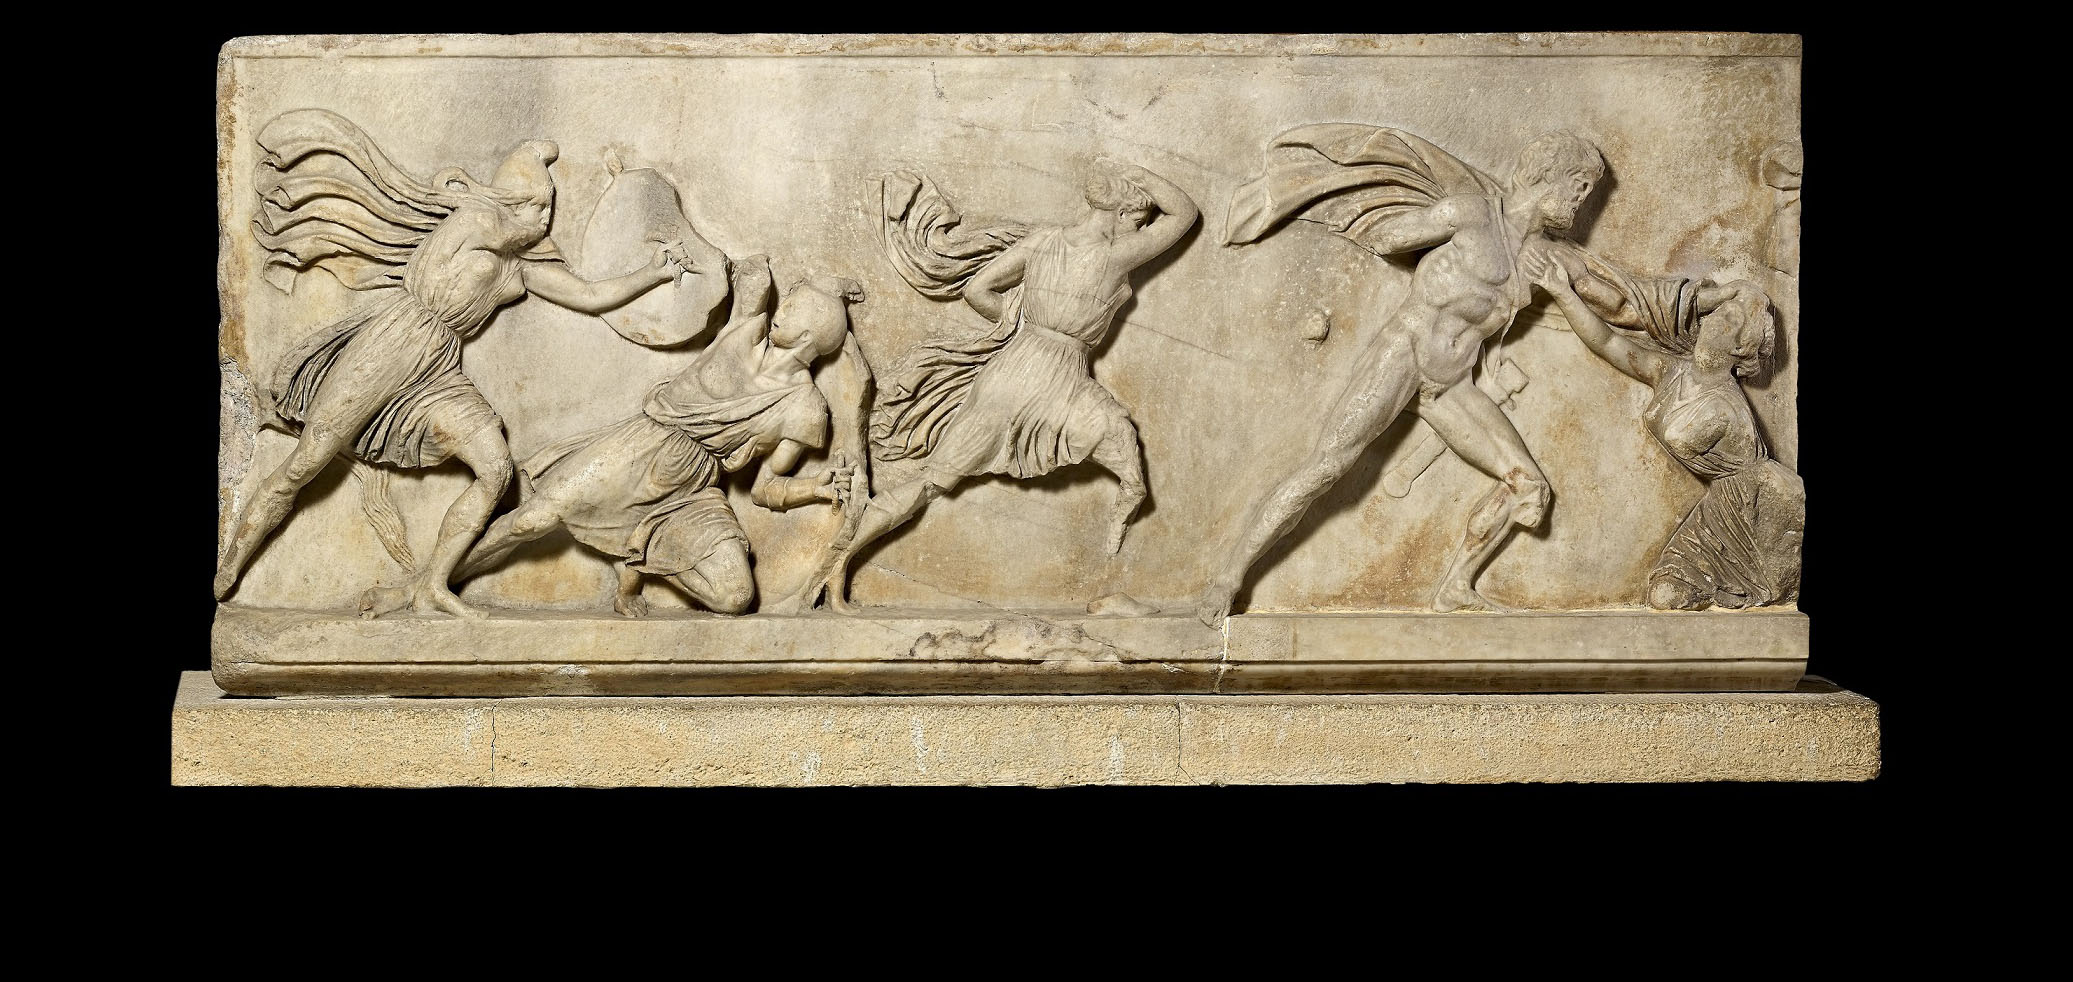 Bloque de un friso con una batalla entre griegos y amazones. Relieve de mármol. c. 350 a. C. Hallado en Mausoleo de Halicarnaso, actual Turquía © The Trustees of the British Museum.